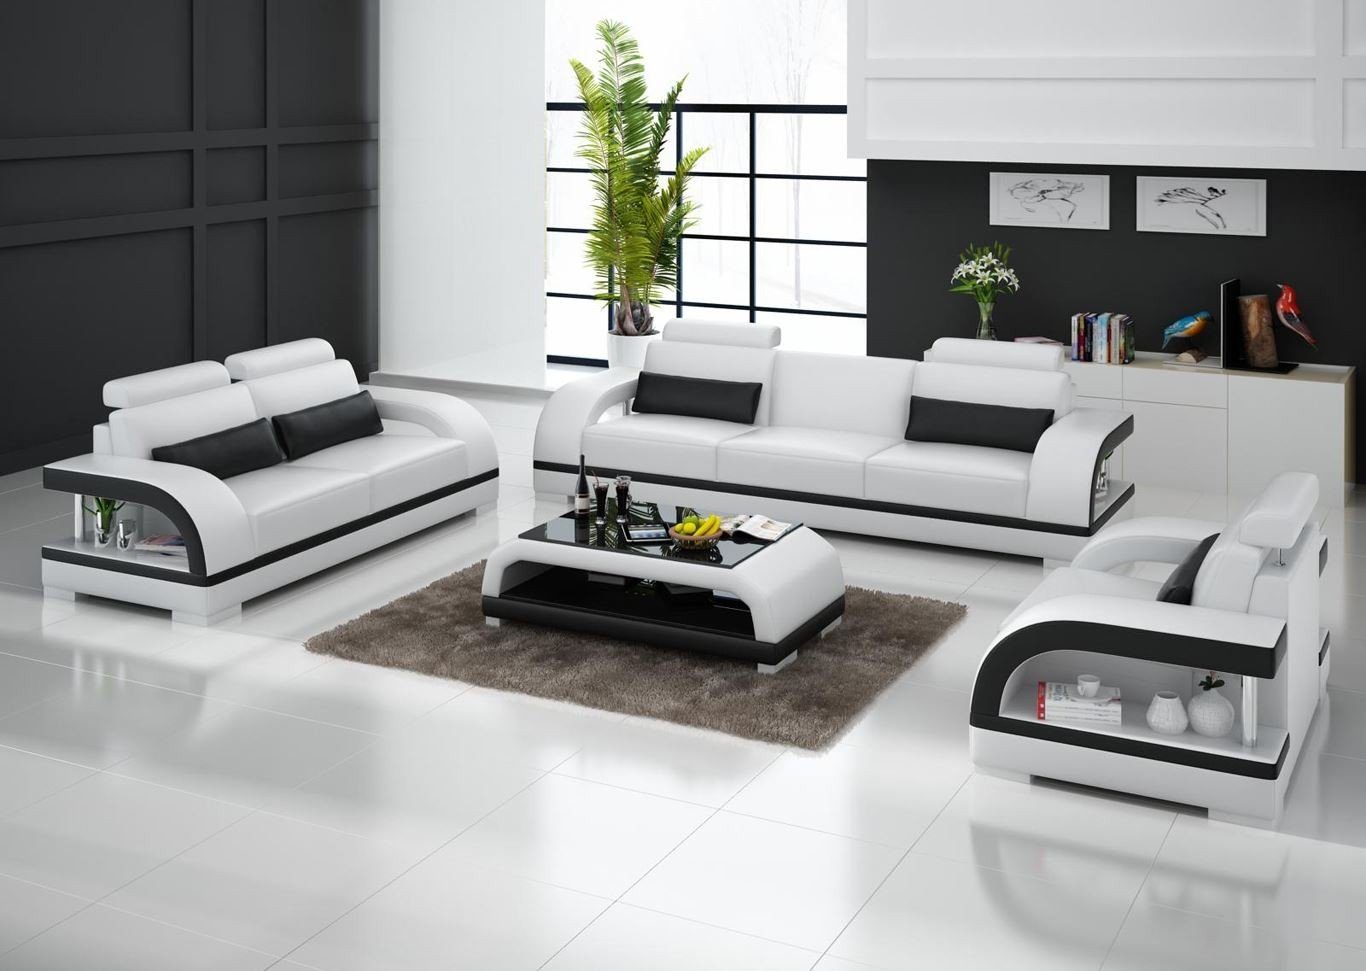 JVmoebel Sofa Moderne Weiße 3+2+1 Sogarnitur Luxus Polstermöbel Garnitur Neu, Made in Europe